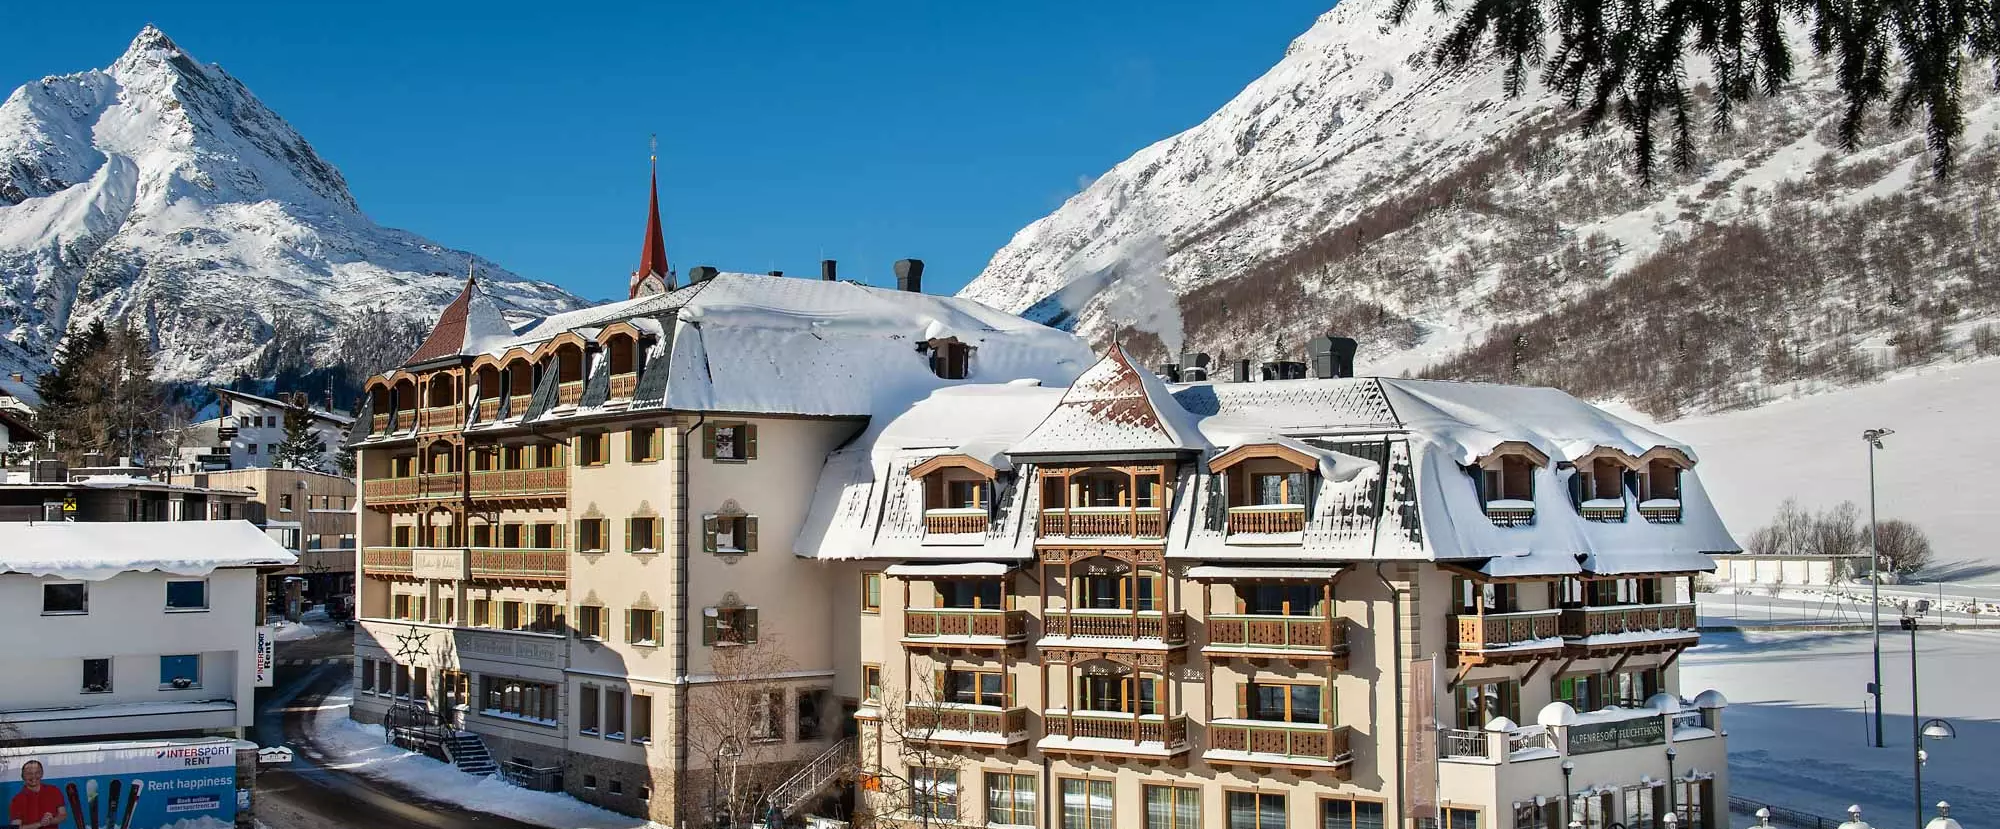 Alpenresort Fluchthorn im Winter mit Blick auf die verschneiten Berge bei Sonnenschein